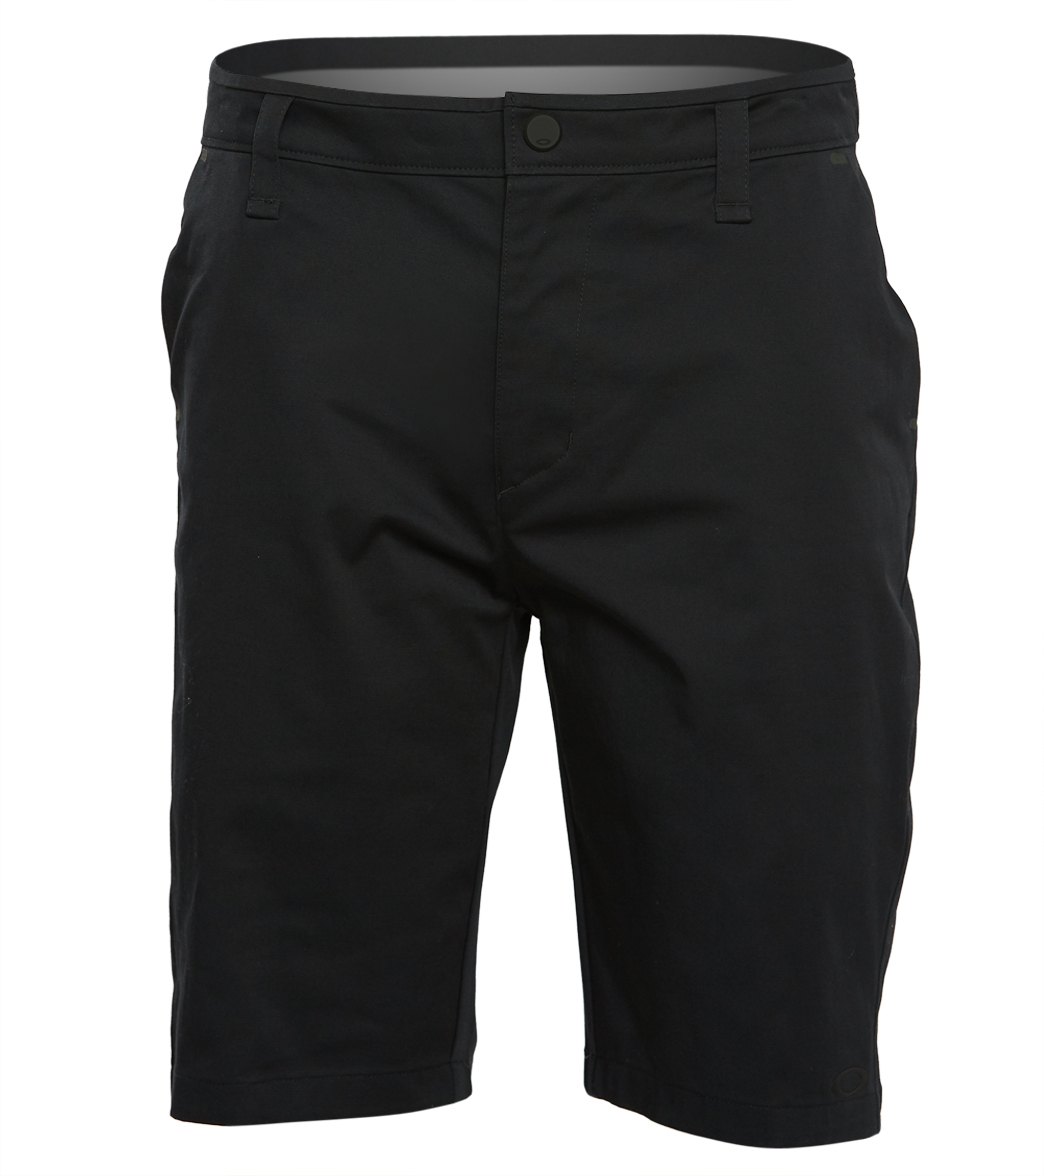 Oakley Velocity Stretch Shorts - Blackout 28 - Swimoutlet.com